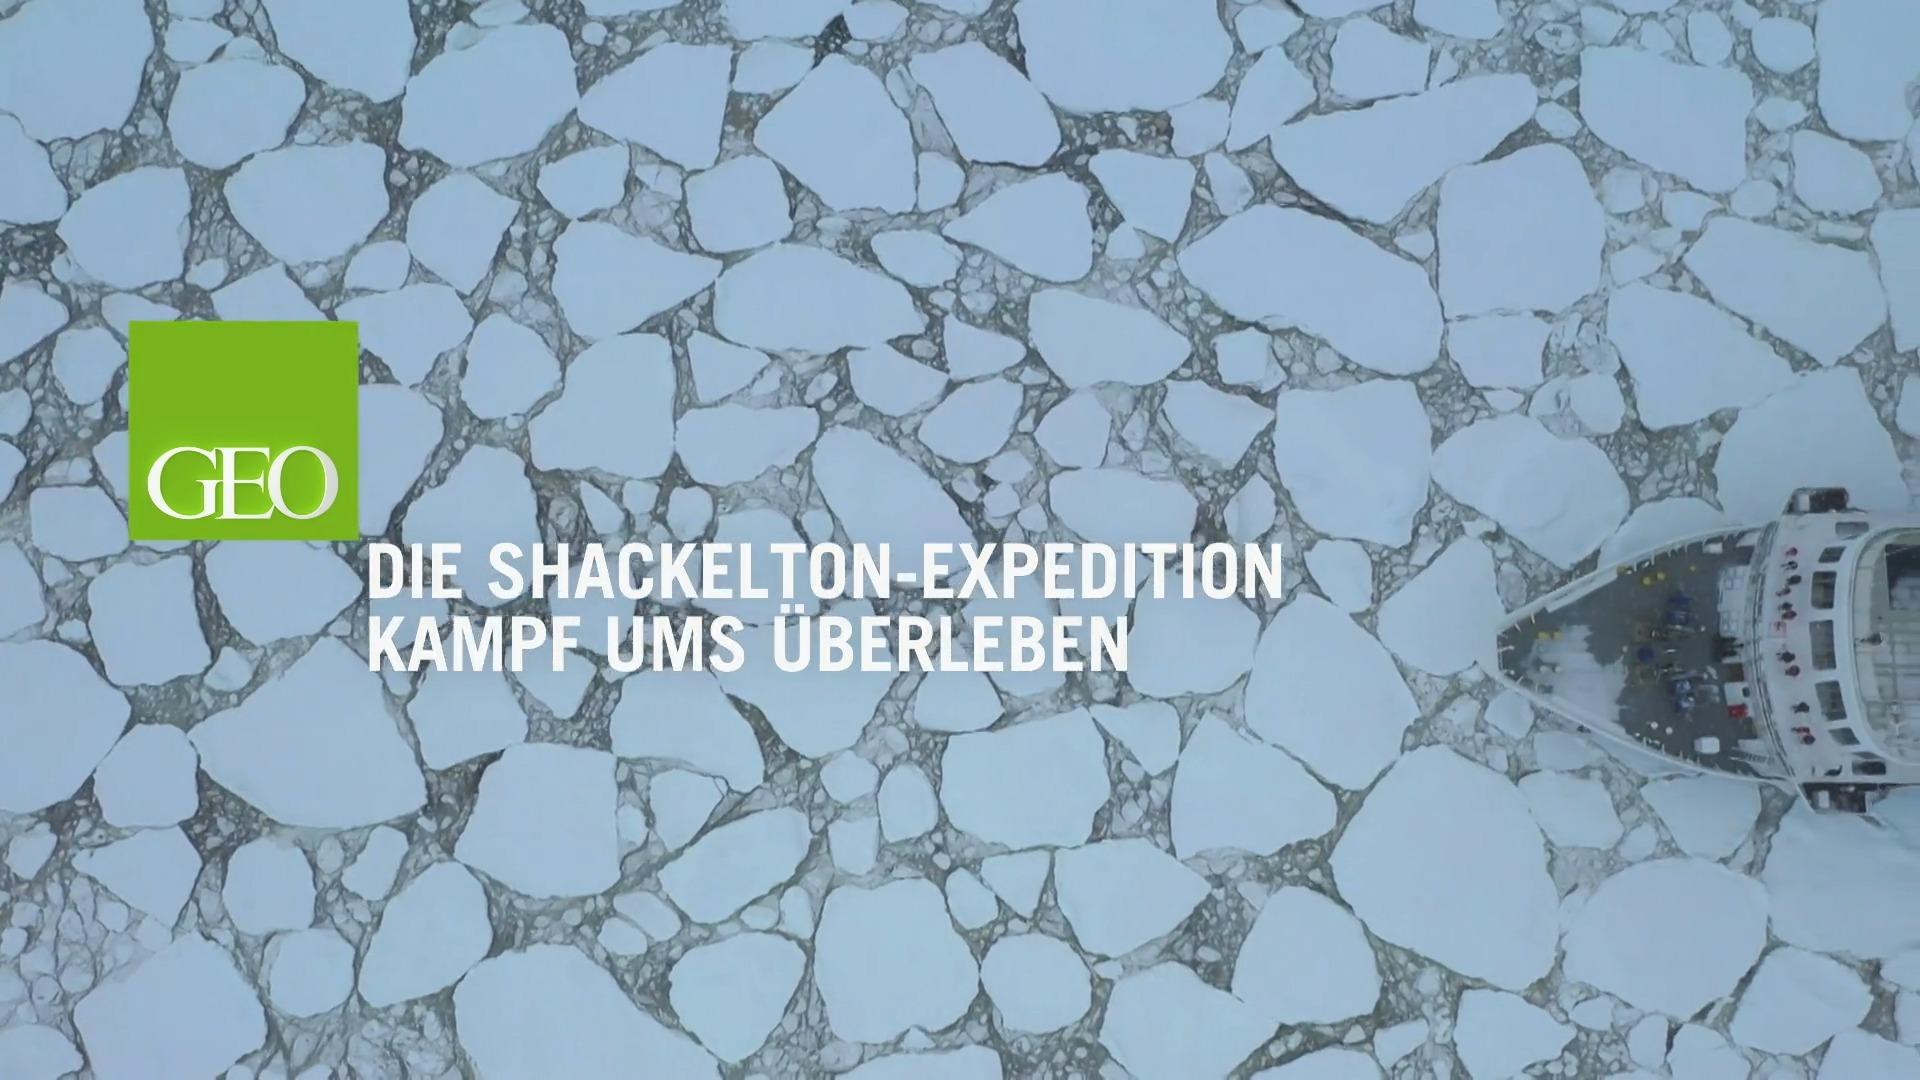 La expedición de Shackleton lucha por sobrevivir